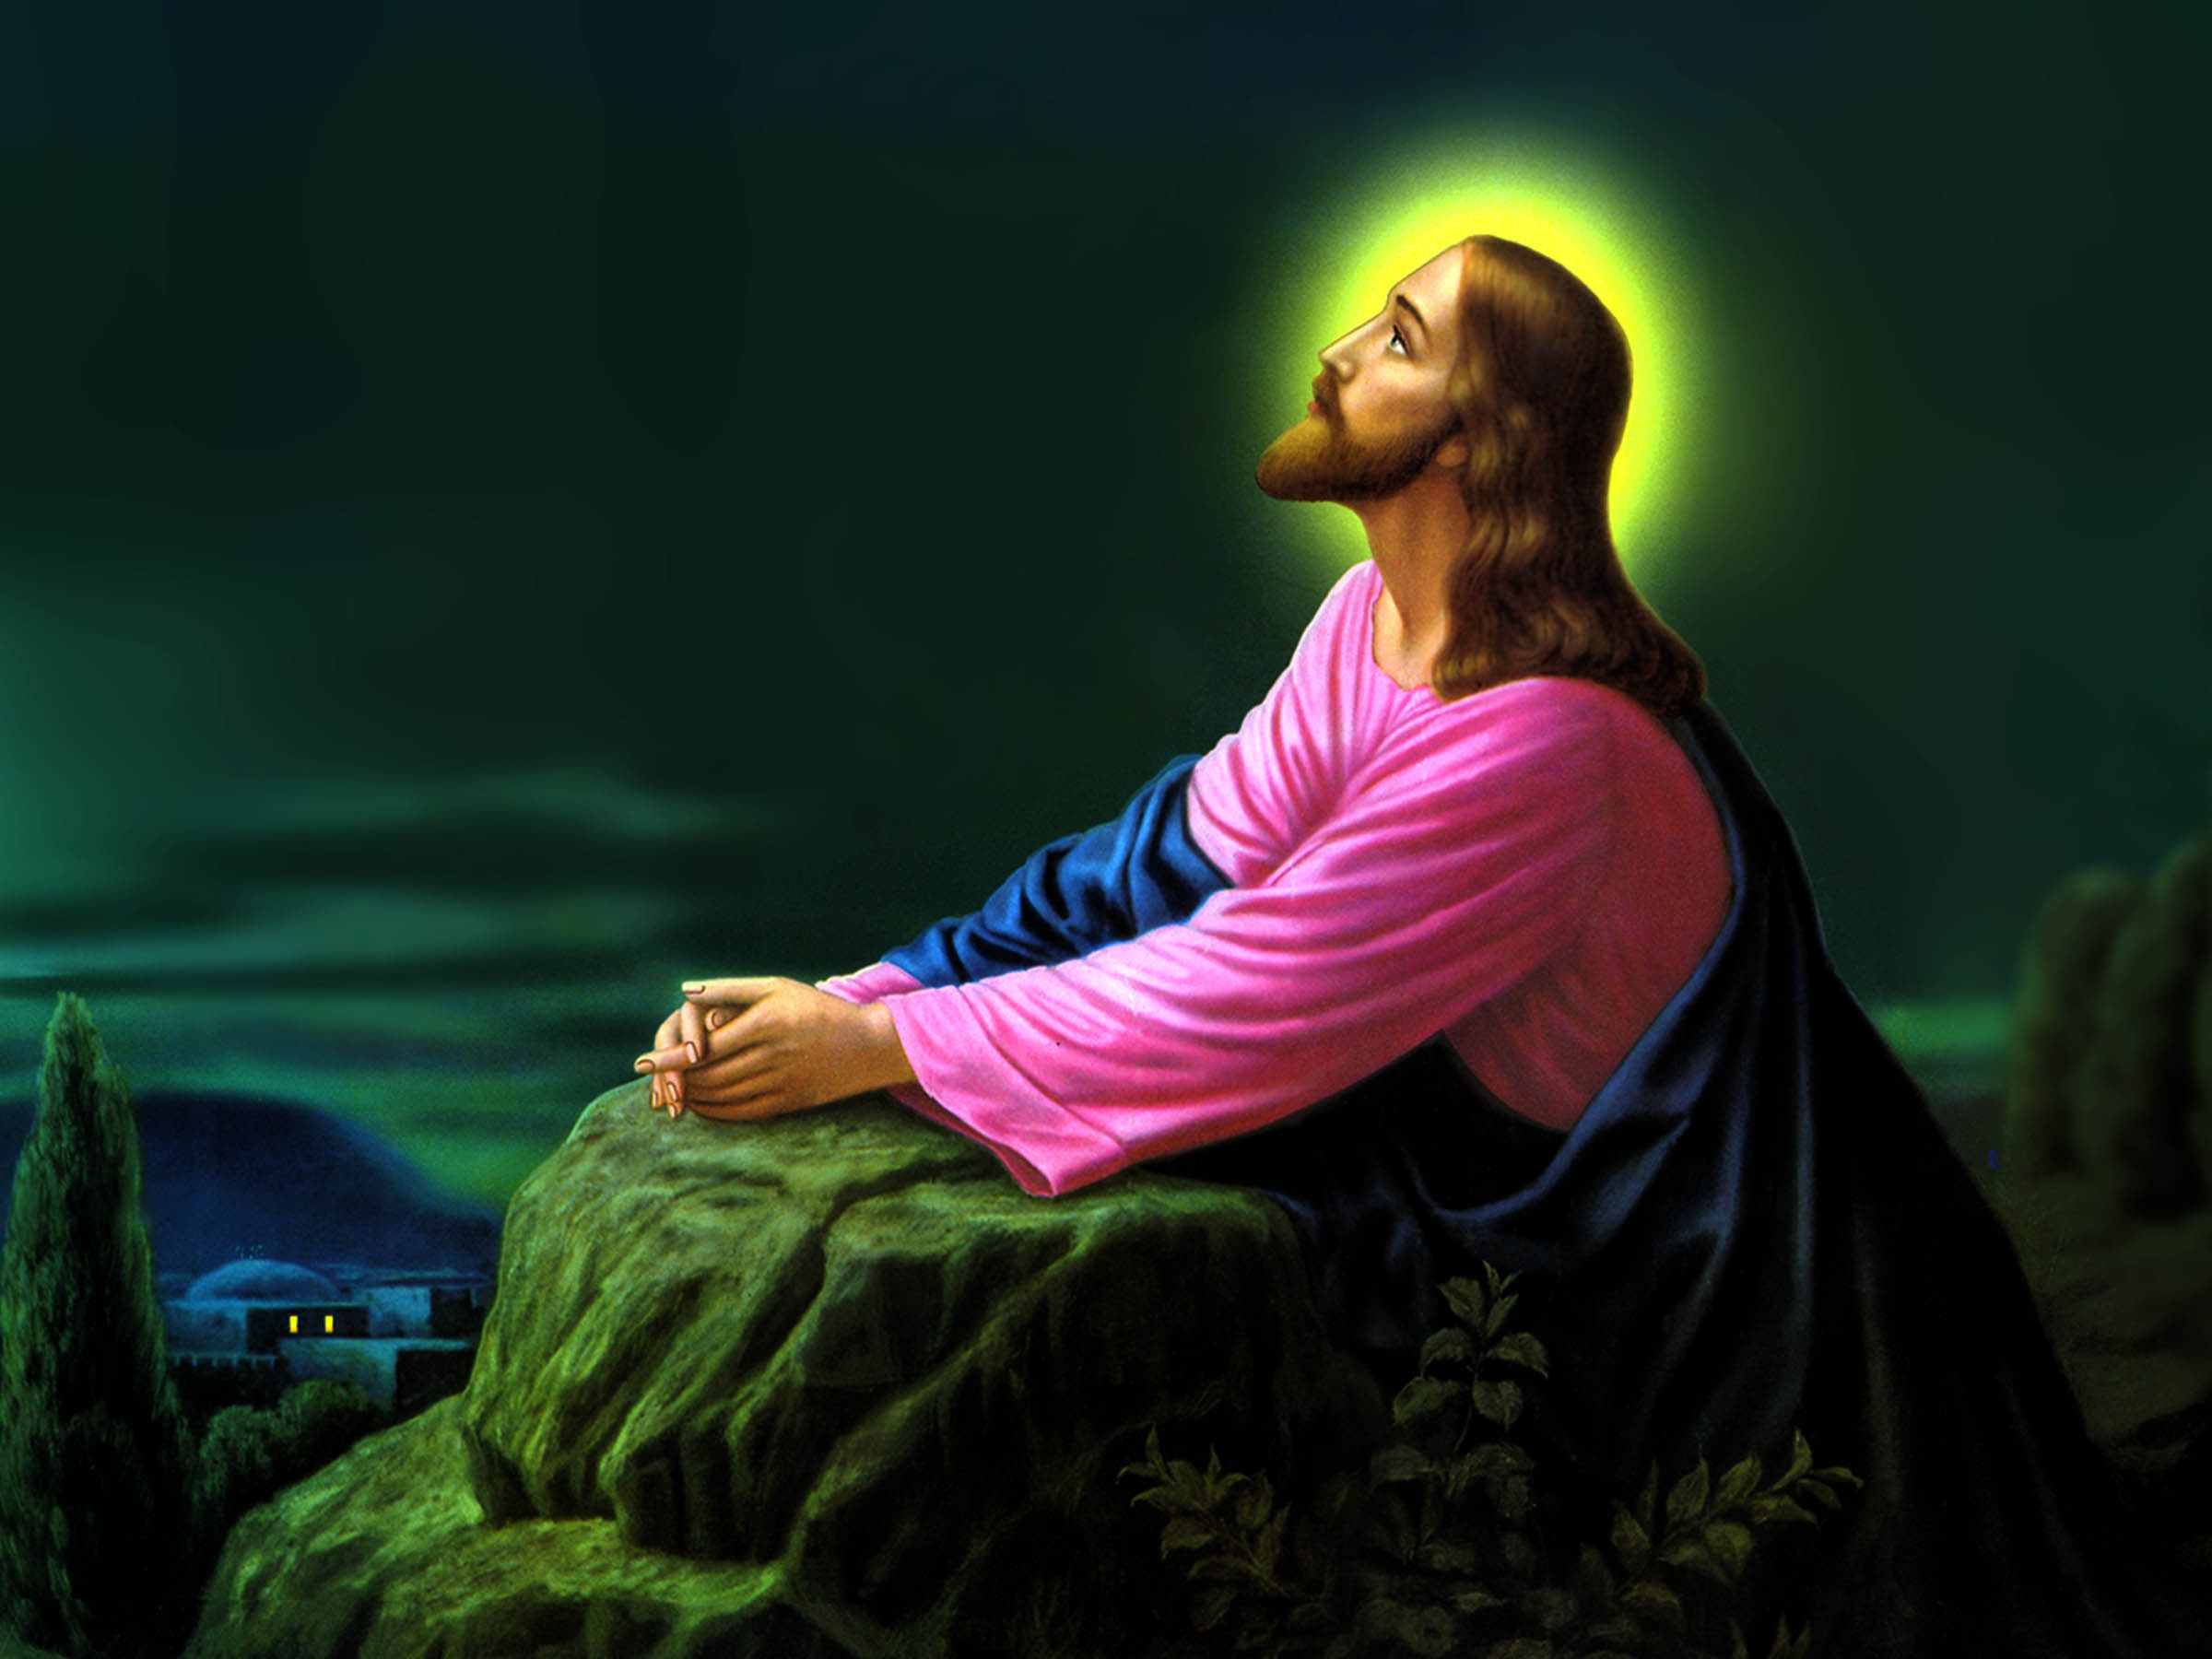 耶稣基督祈祷免费的背景桌面图像壁纸1600x900分辨率查看